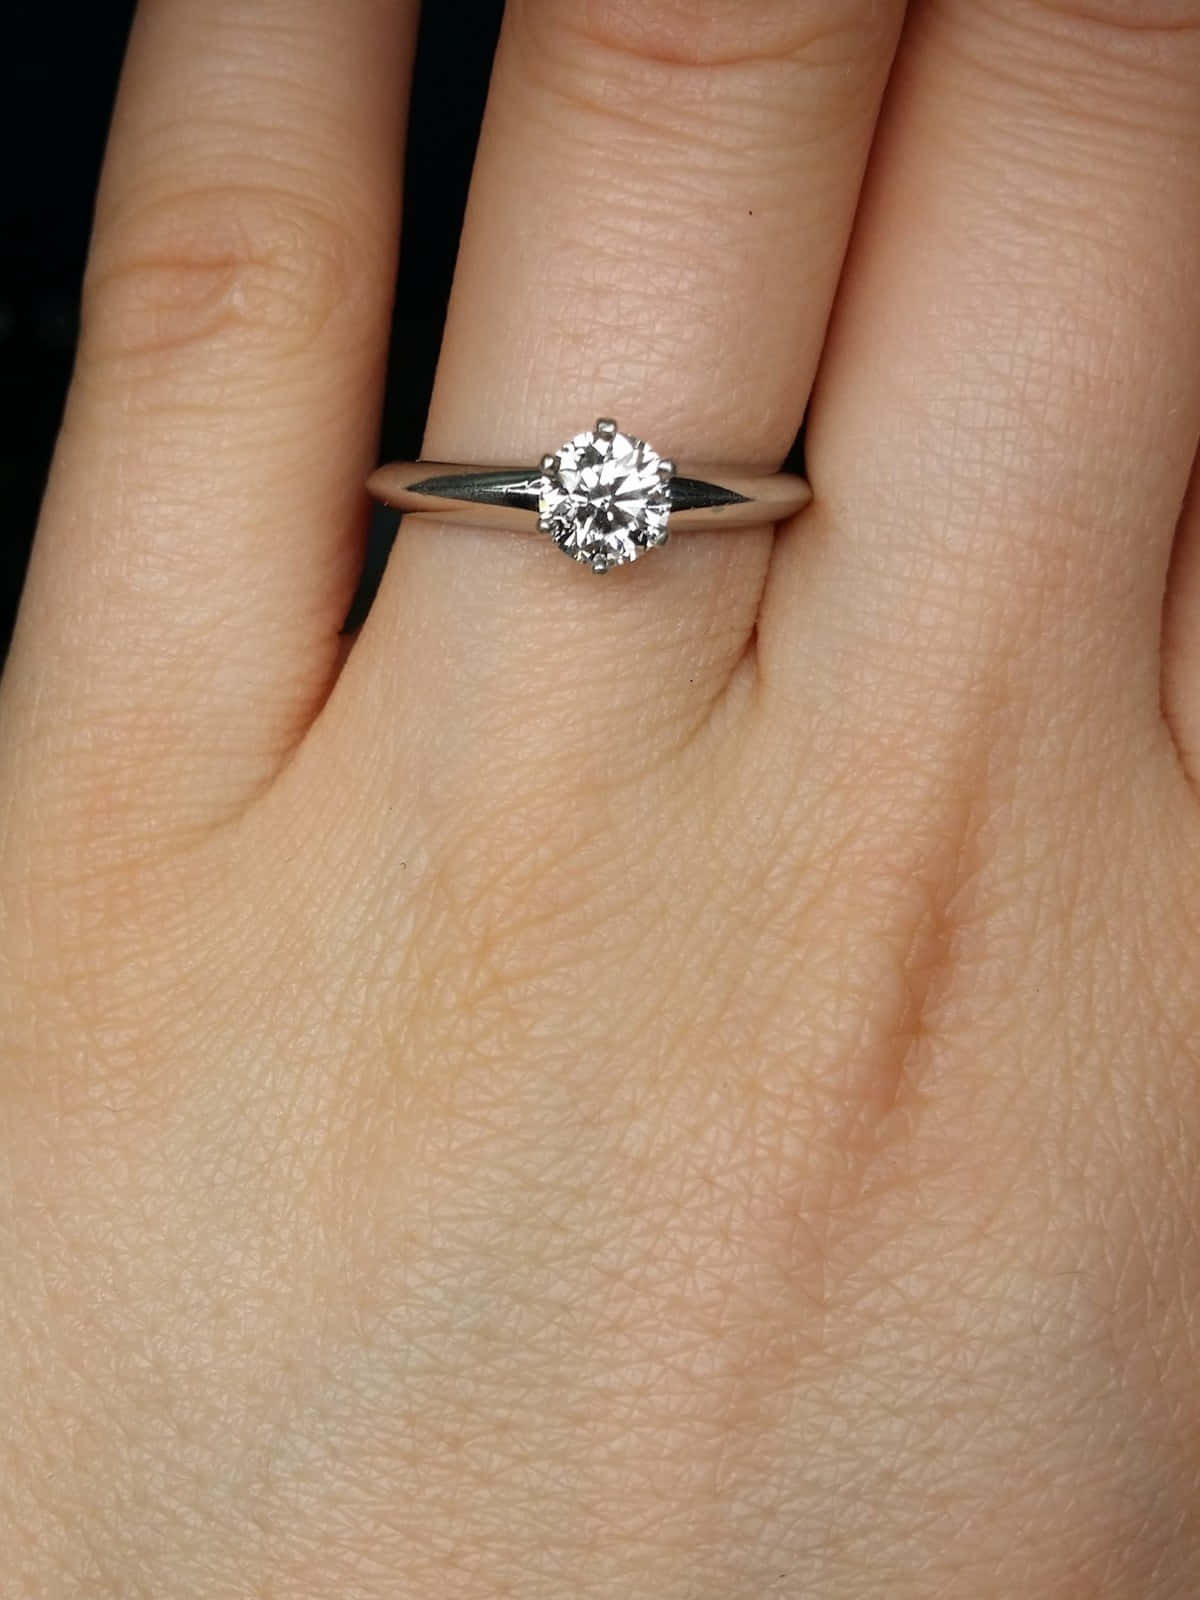 Elegant Diamond Engagement Ring Showcased on Velvet Material